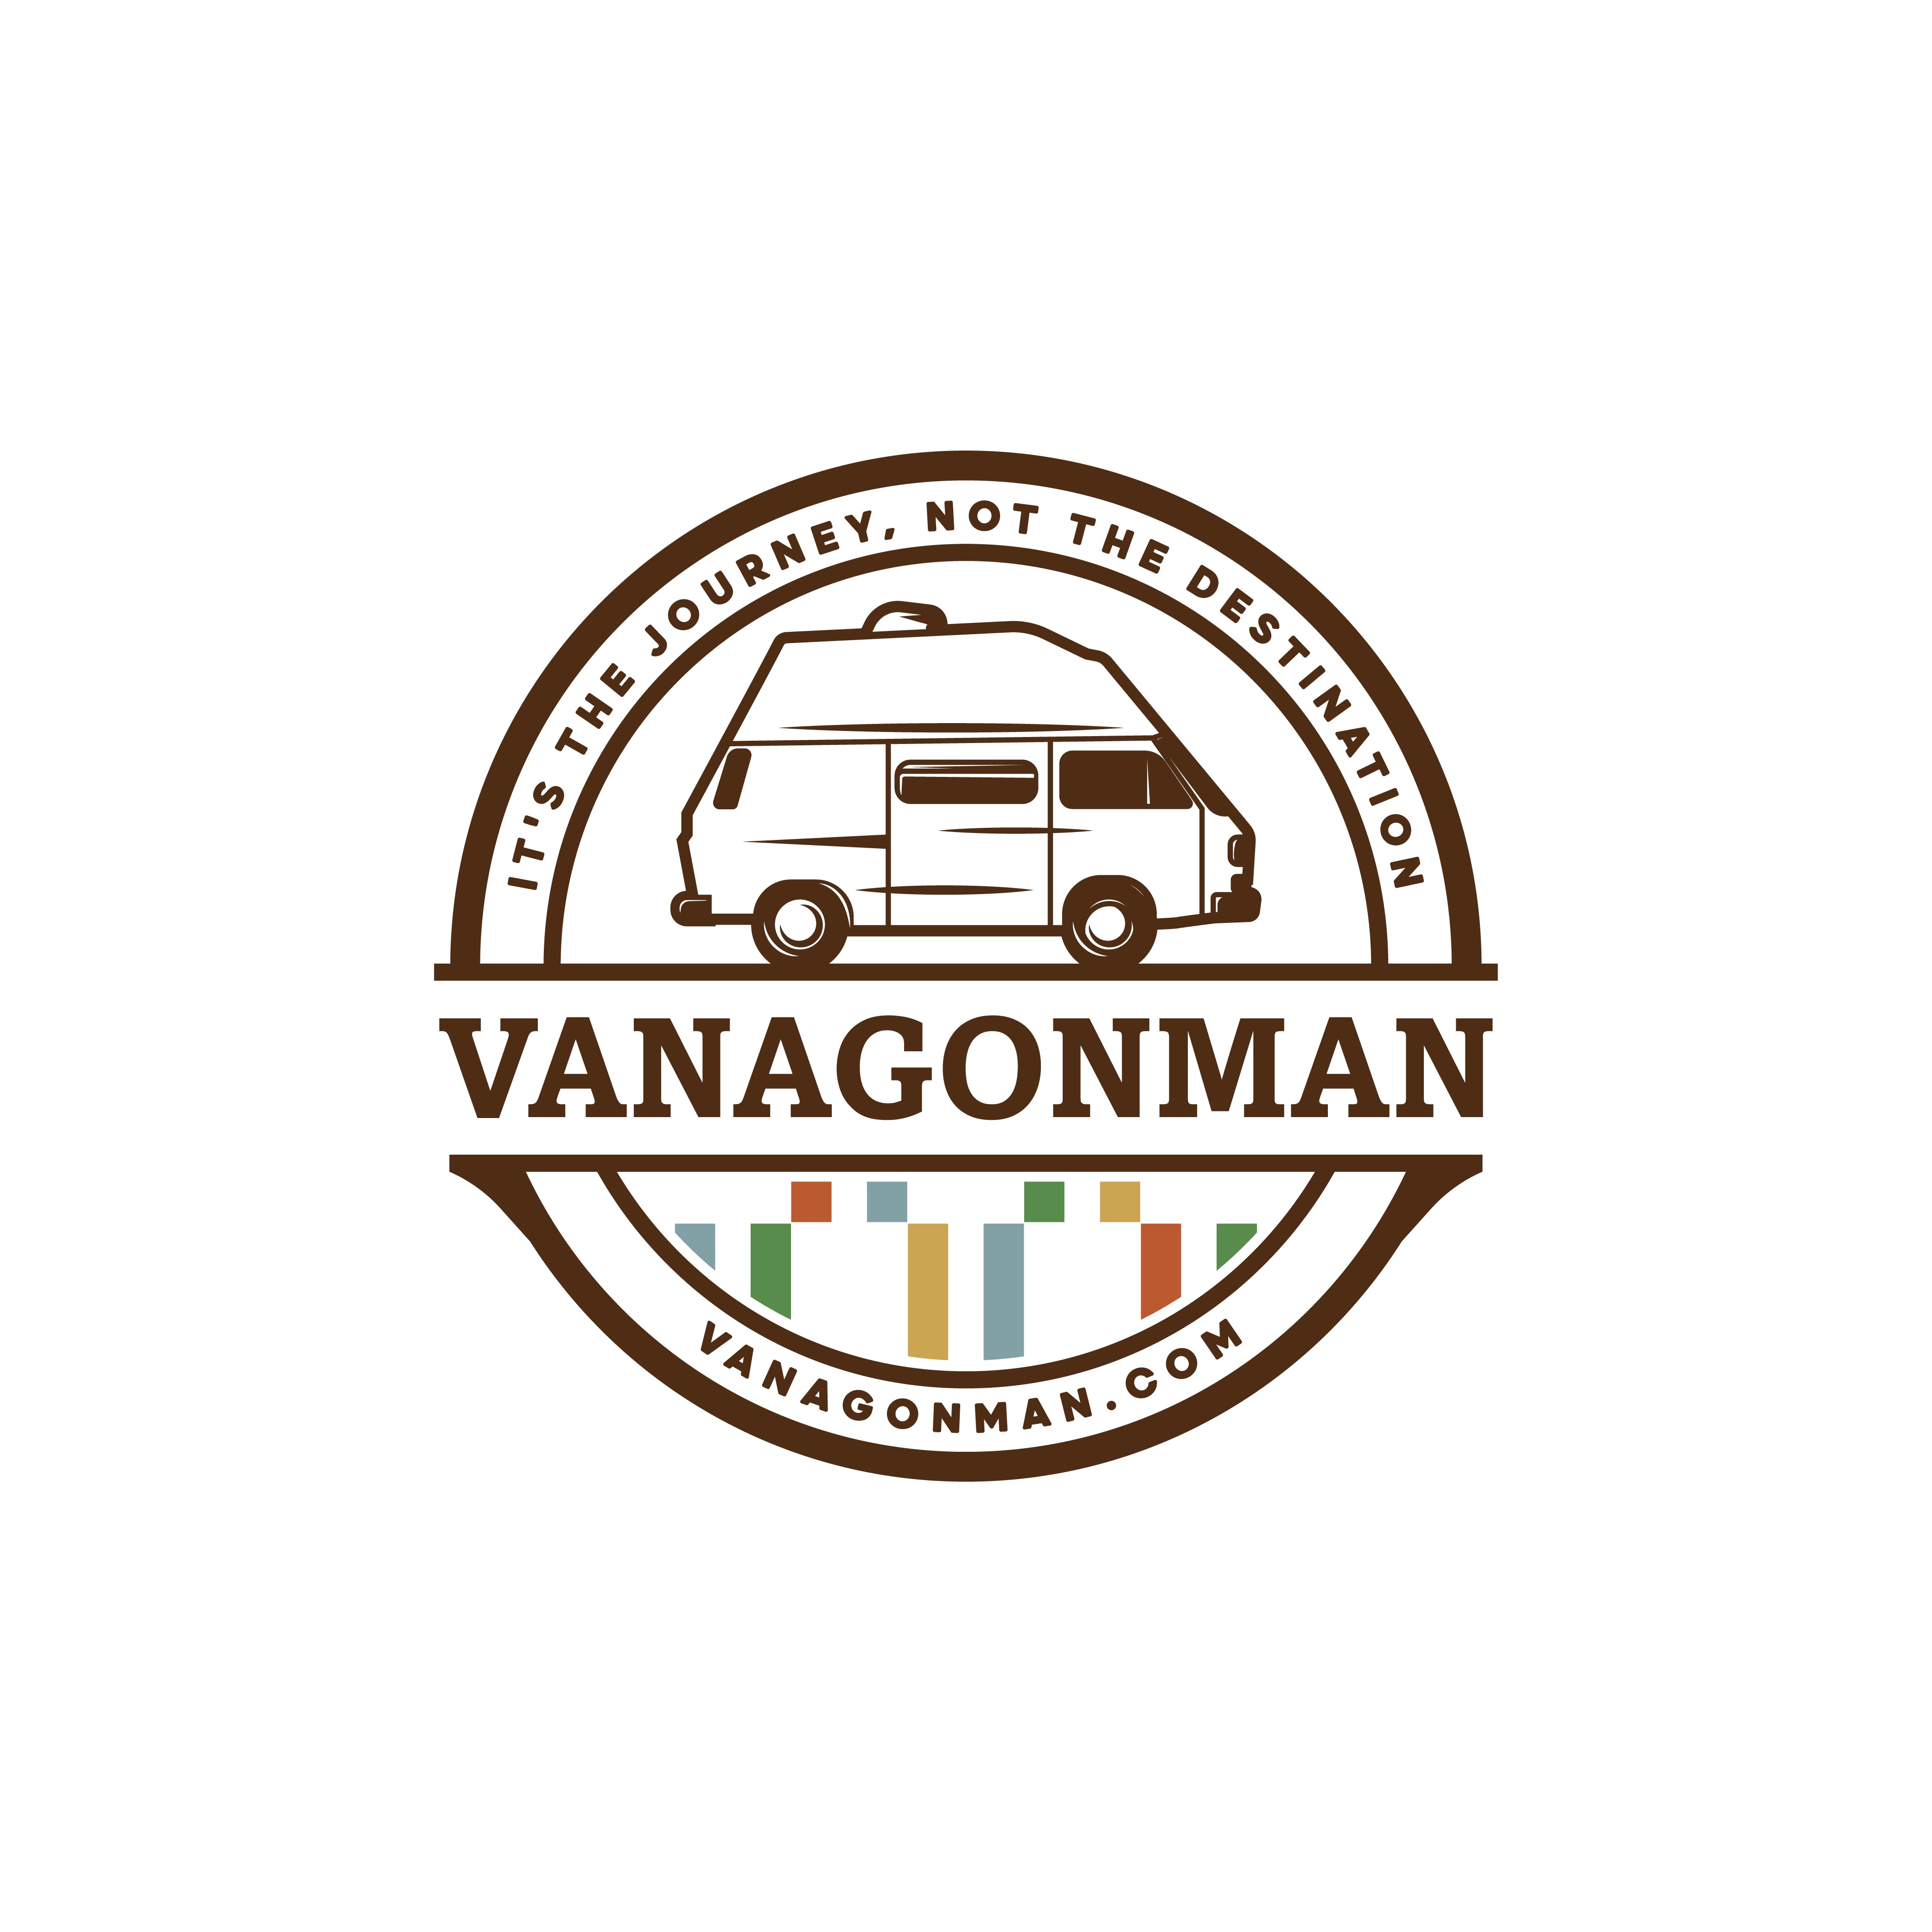 VanagonMan.com